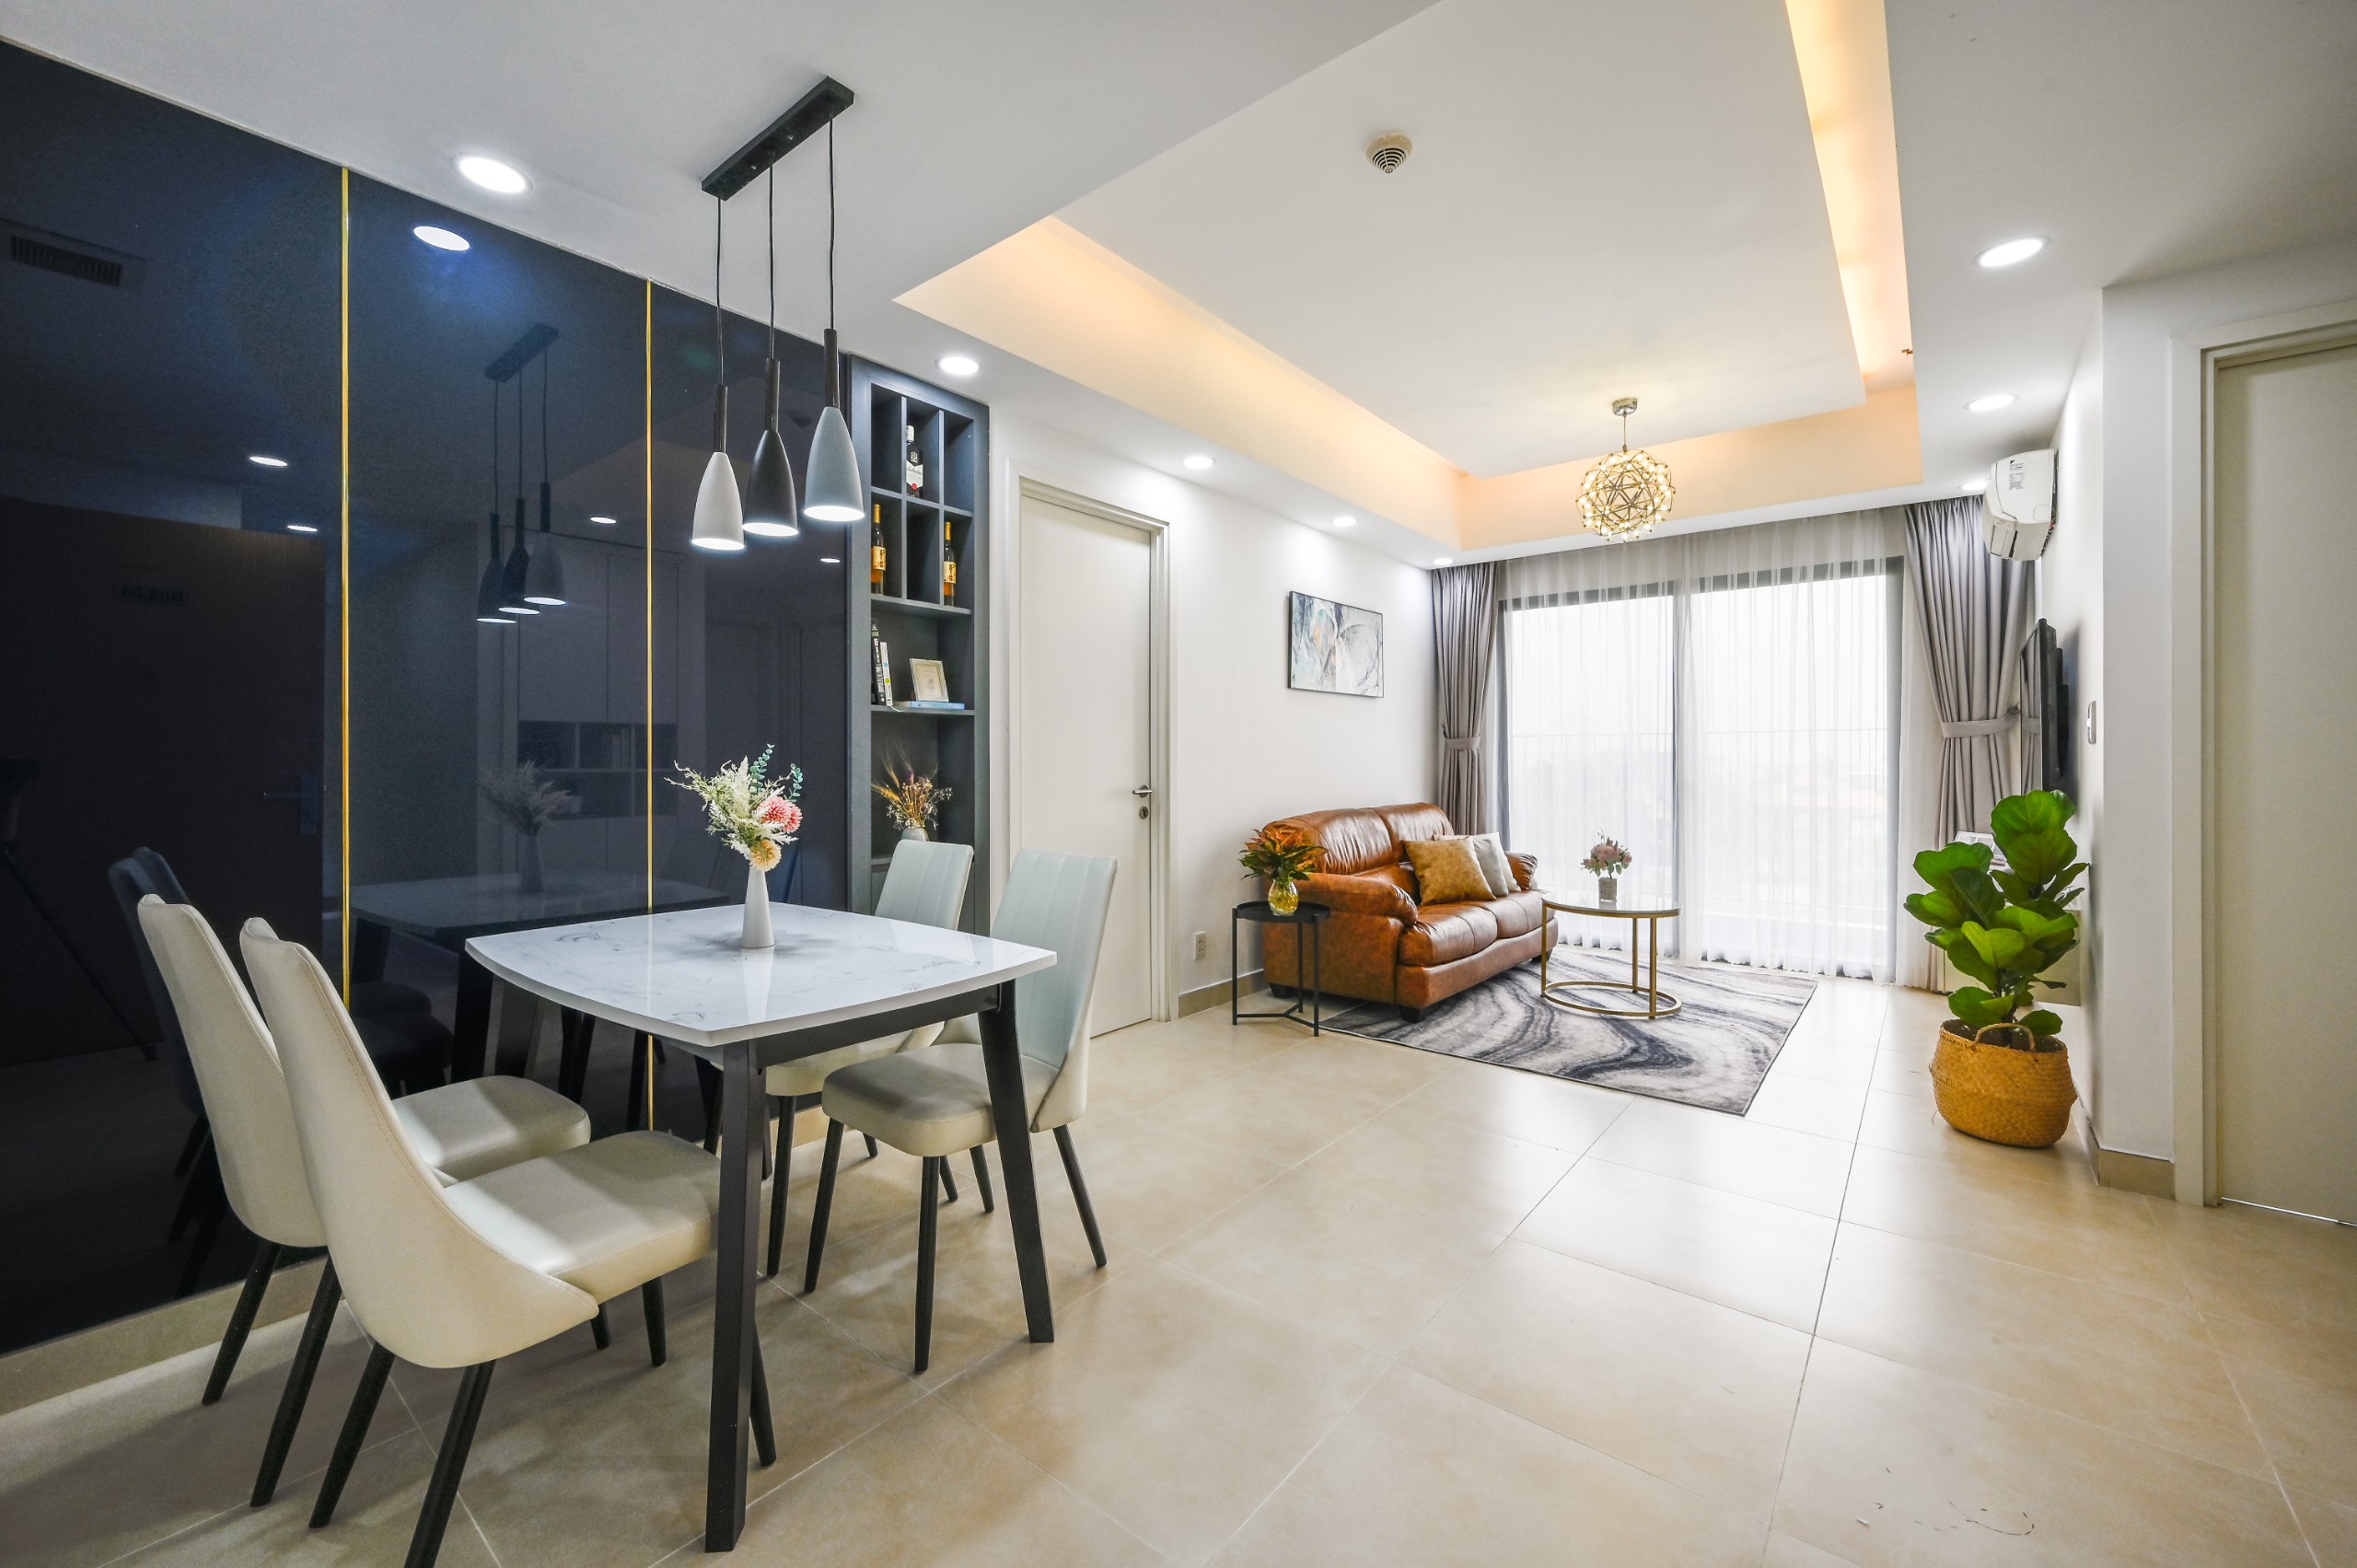 Bán căn hộ Masteri Thảo Điền, 2PN Giá 3,5 tỉ, 2PN Giá 4-4,5 tỉ. LH 0909988697